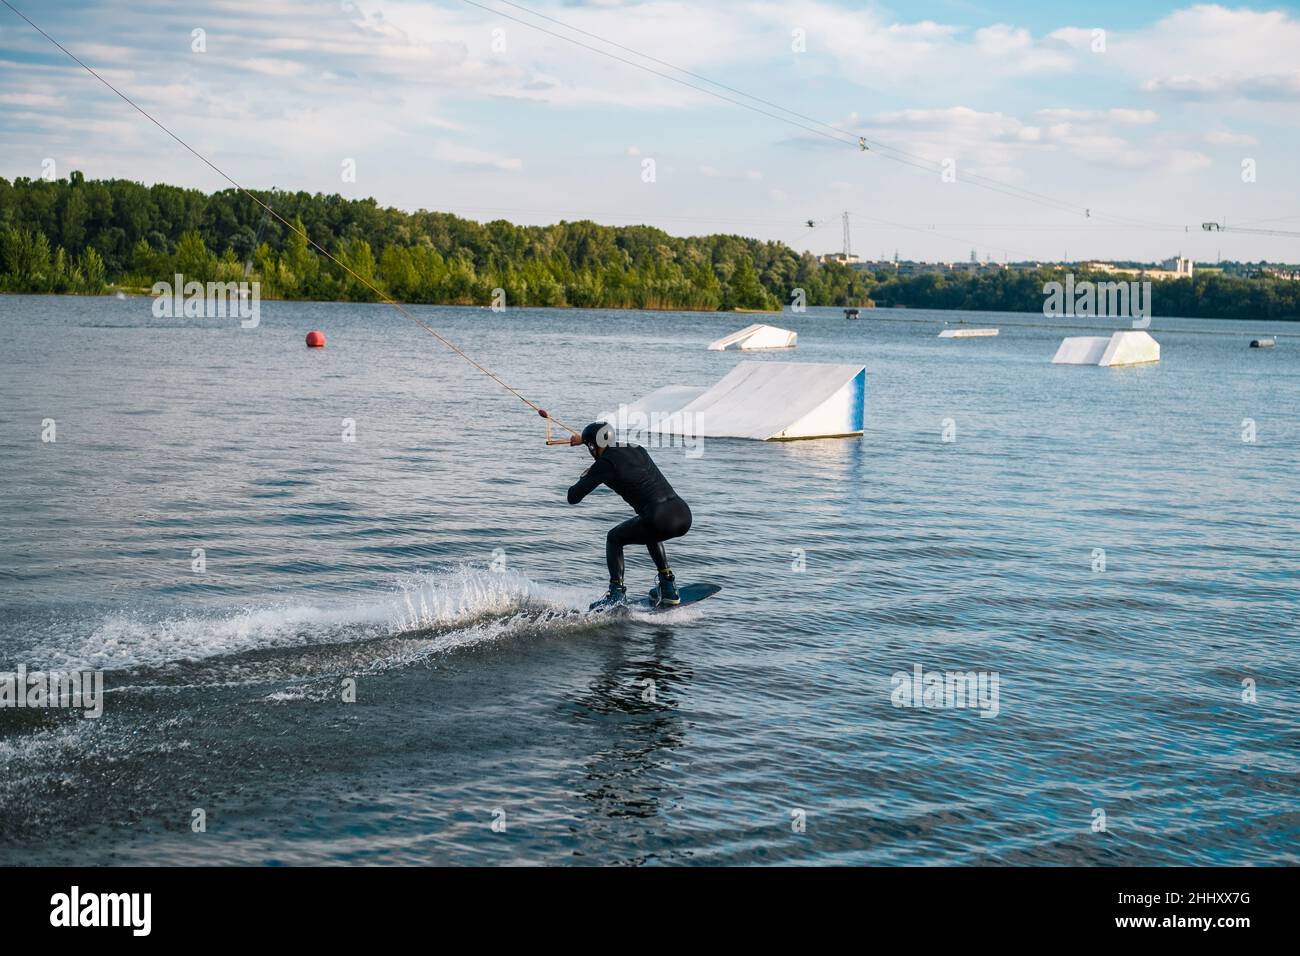 Wakeboarder rutscht auf dem Wasser an Bord und bereitet sich auf einen Rampensprung vor Stockfoto